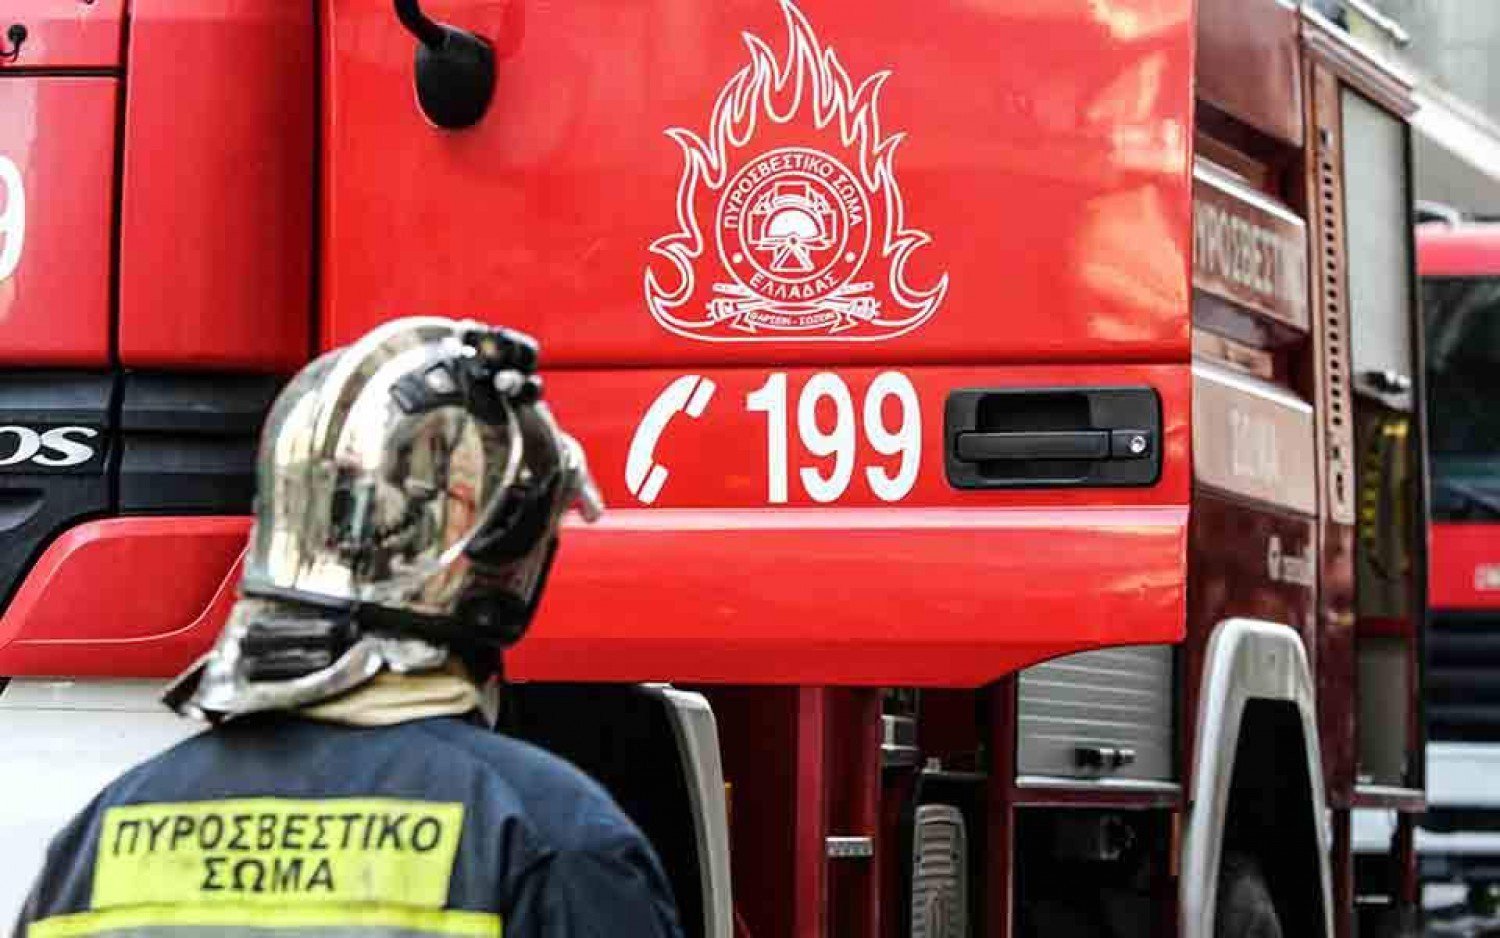 Θεσσαλονίκη: Φωτιά σε διαμέρισμα – Είχε ανάψει κεράκι για το Μεγάλο Ψυχοσάββατο